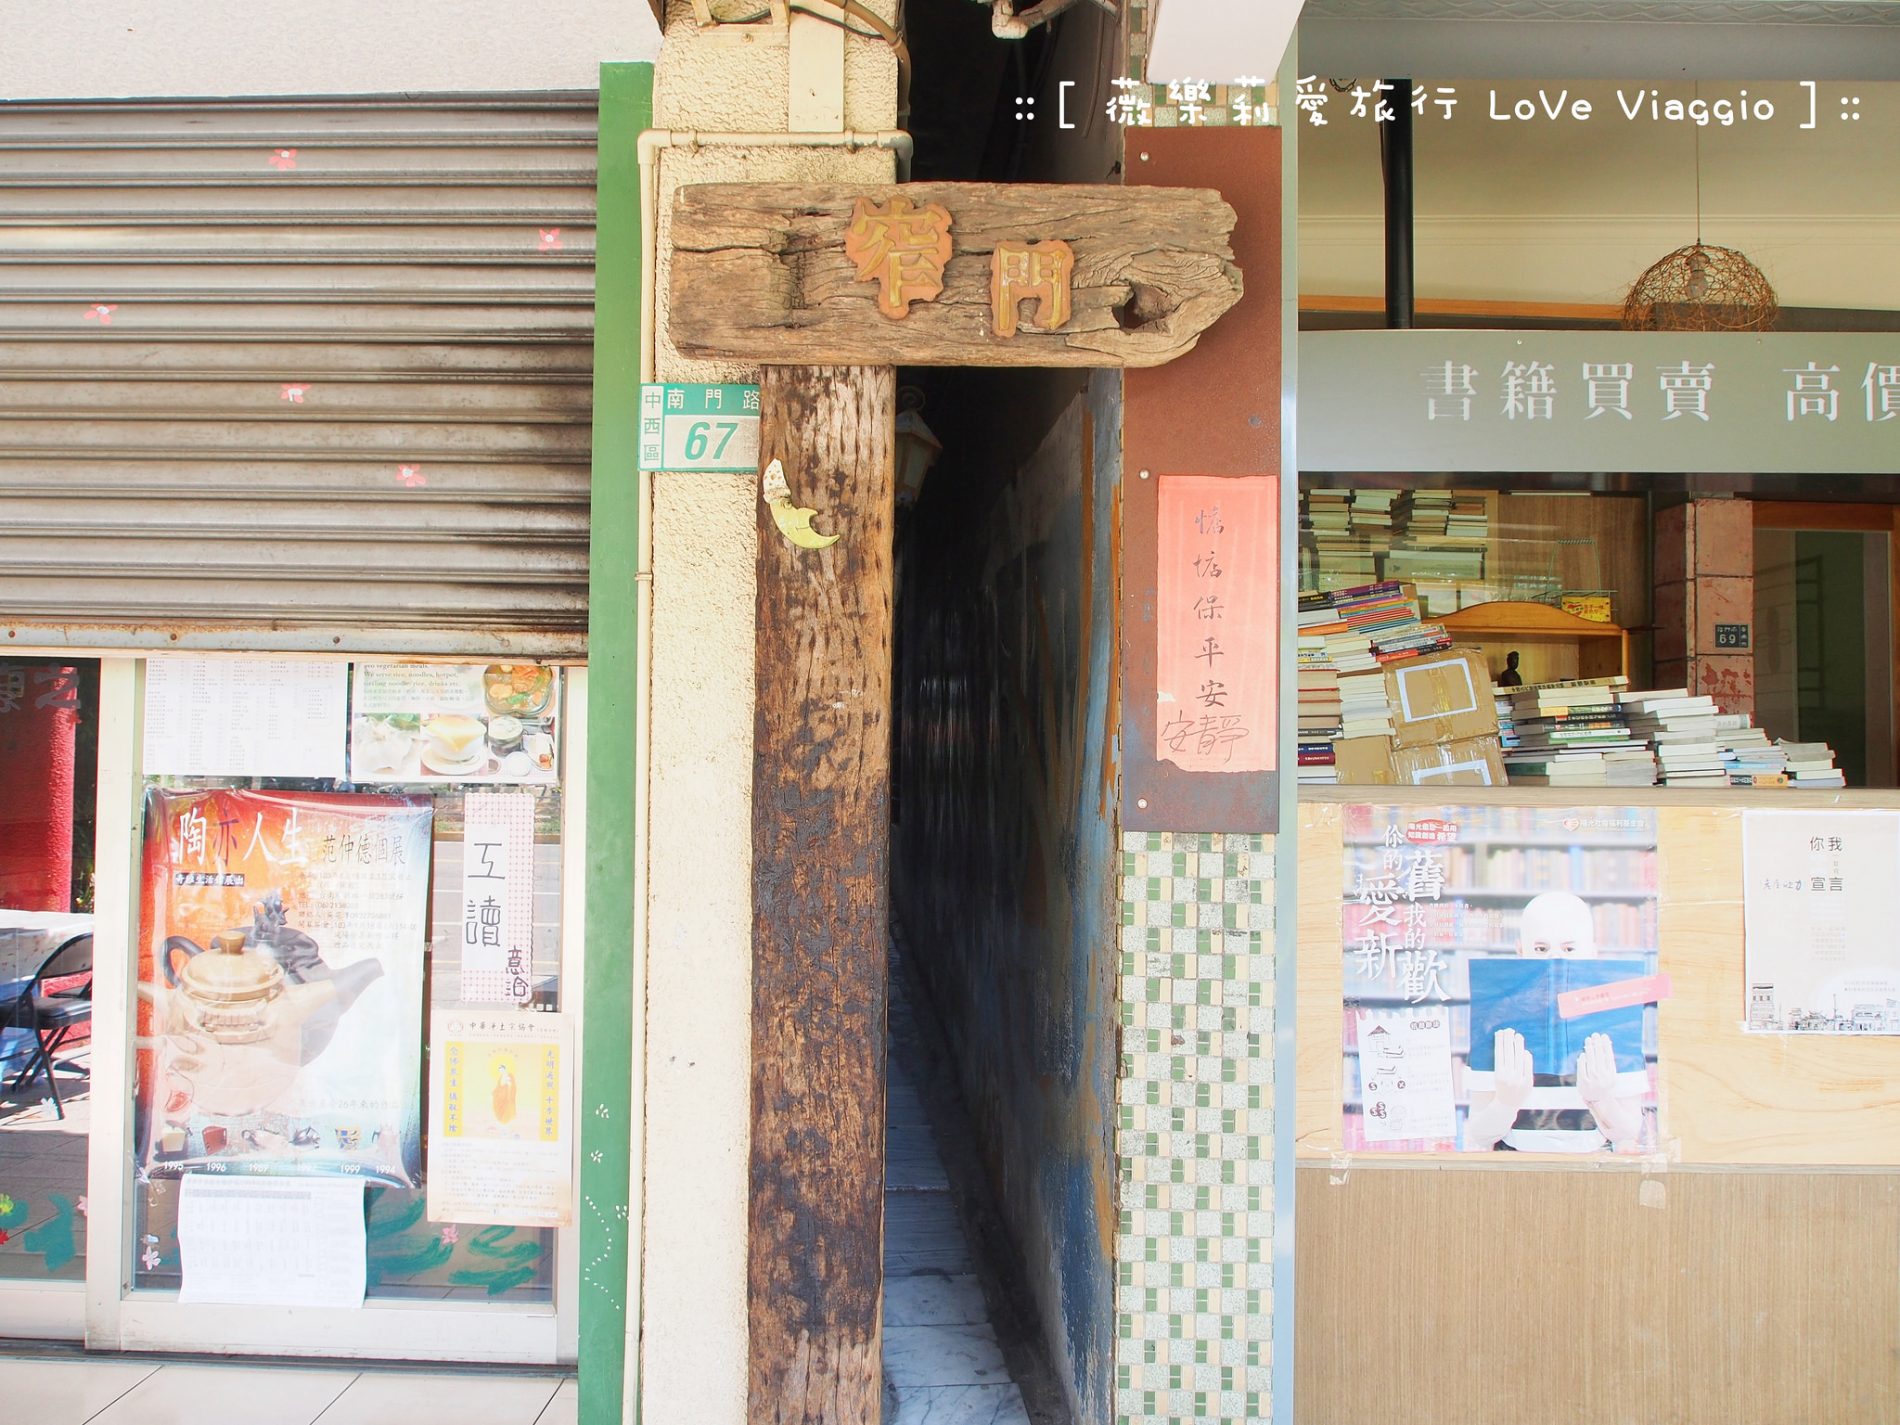 台南窄門咖啡,台南餐廳,窄門咖啡,窄門咖啡館,老屋餐廳 @薇樂莉 - 旅行.生活.攝影